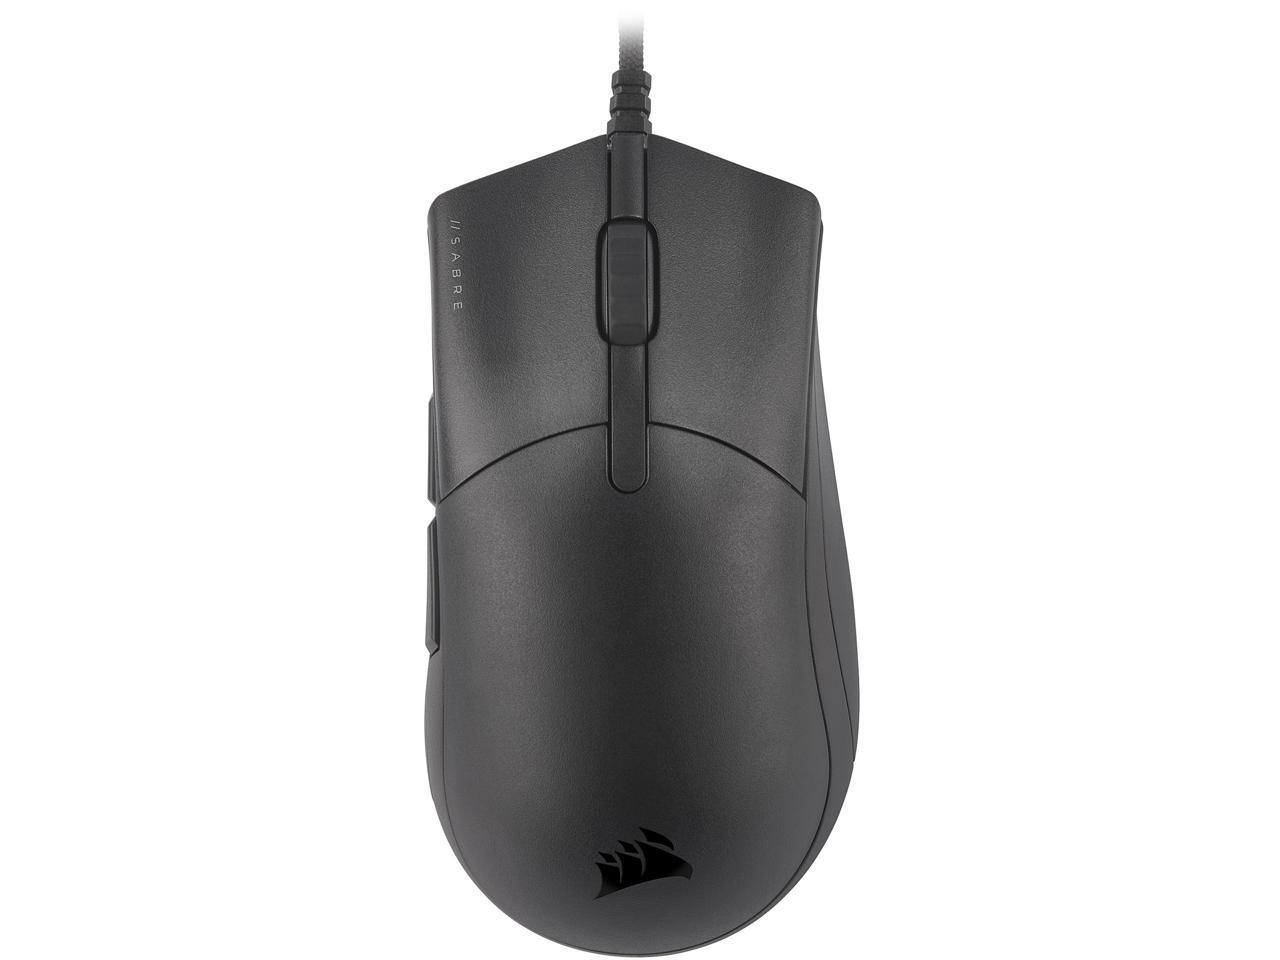 Corsair SABRE PRO CHAMPION SERIES (CH-9303101-NA) Gaming Mouse $25 + Free Shipping